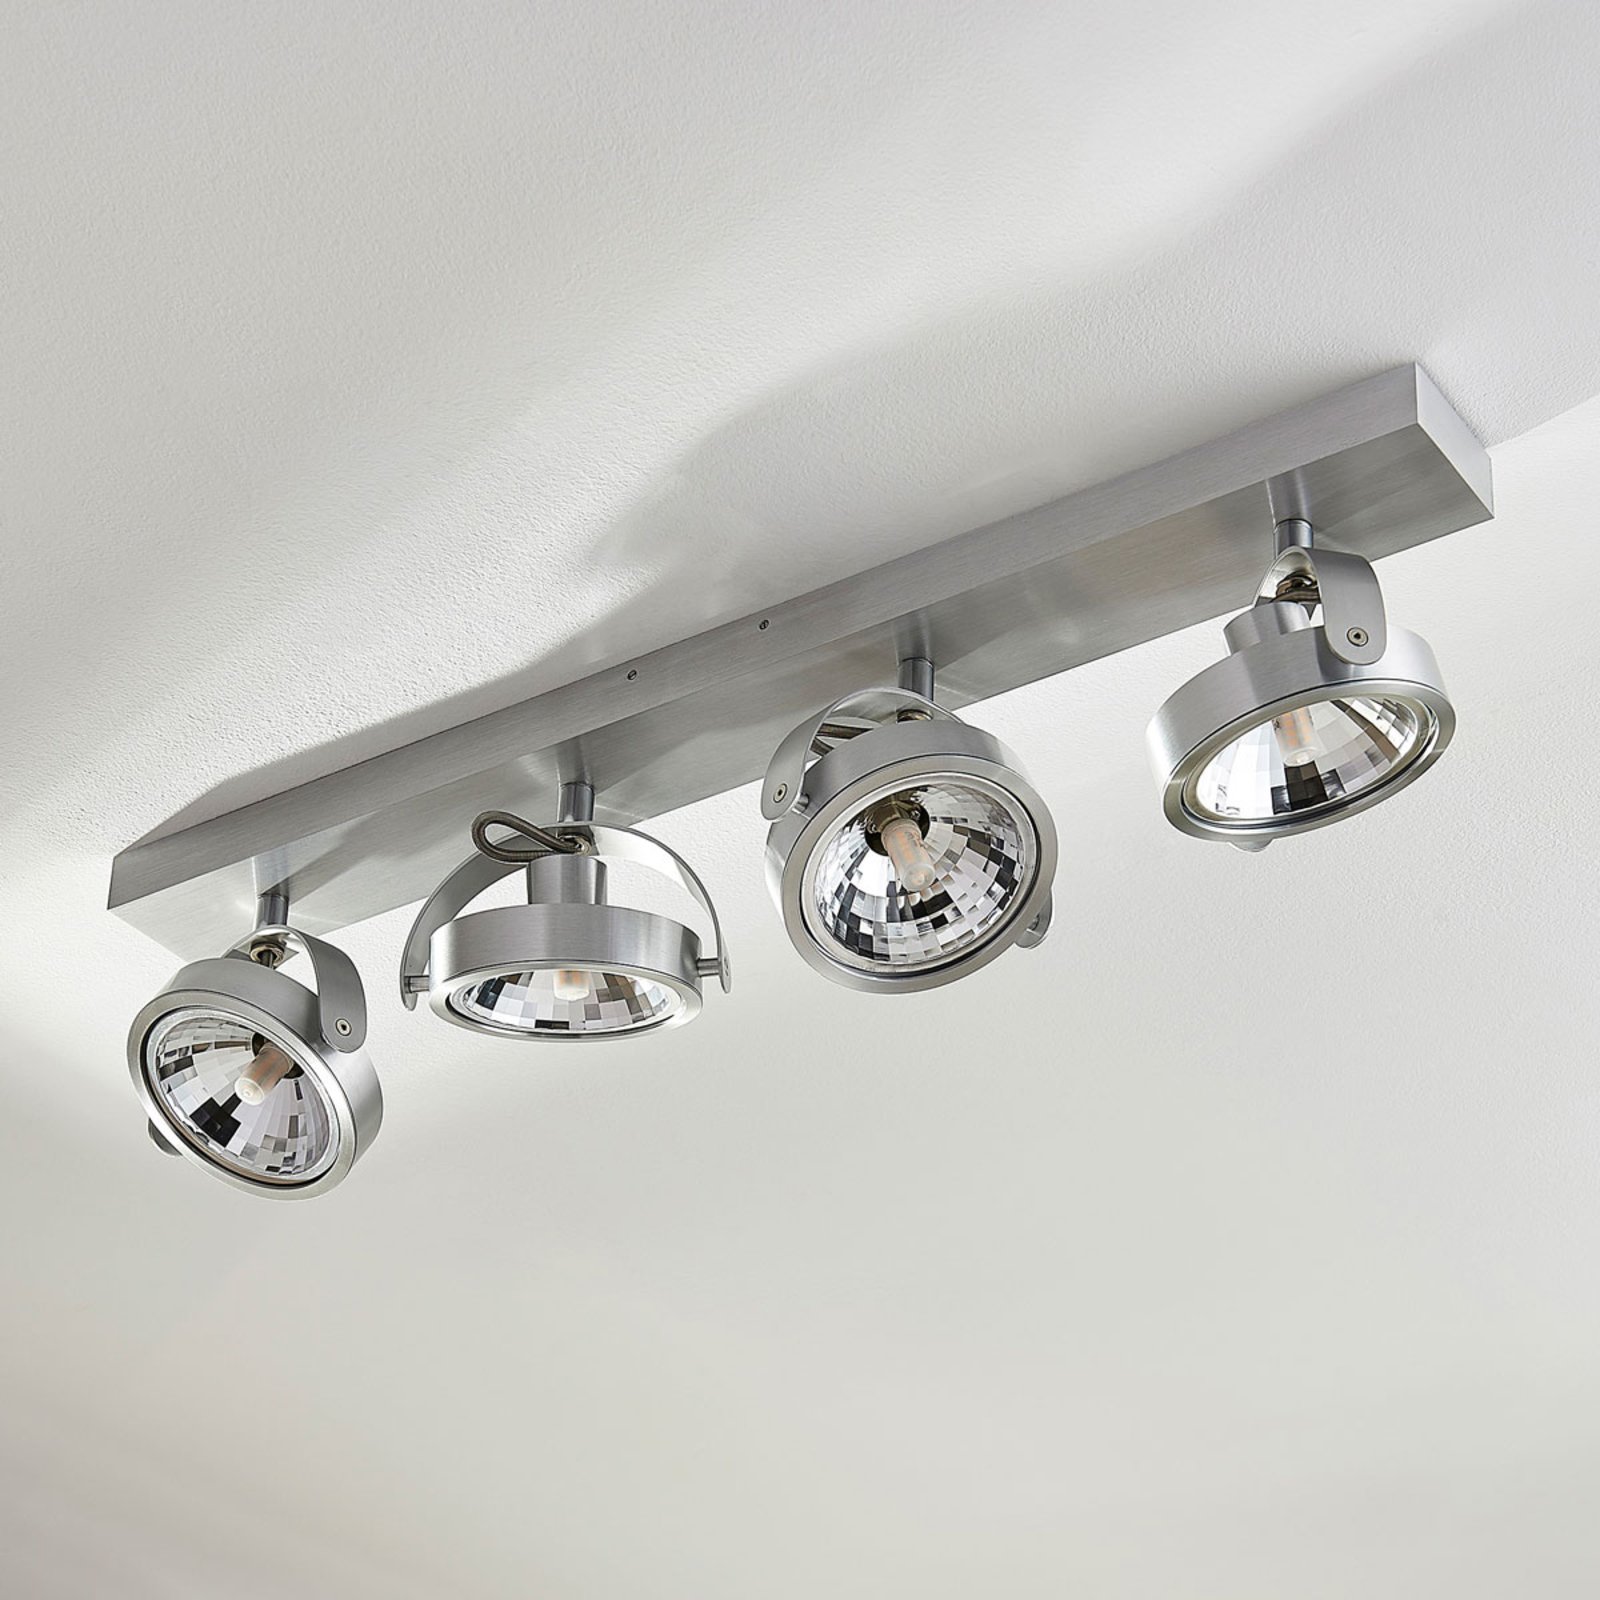 Lampe - Deckenleuchte Lampenwelt LED Deckenlampe Lionel für Wohnzimmer & Esszimmer Spot Modern 4 flammig, A+, inkl. Leuchtmittel Wandleuchte in Chrom aus Metall u.a Strahler 